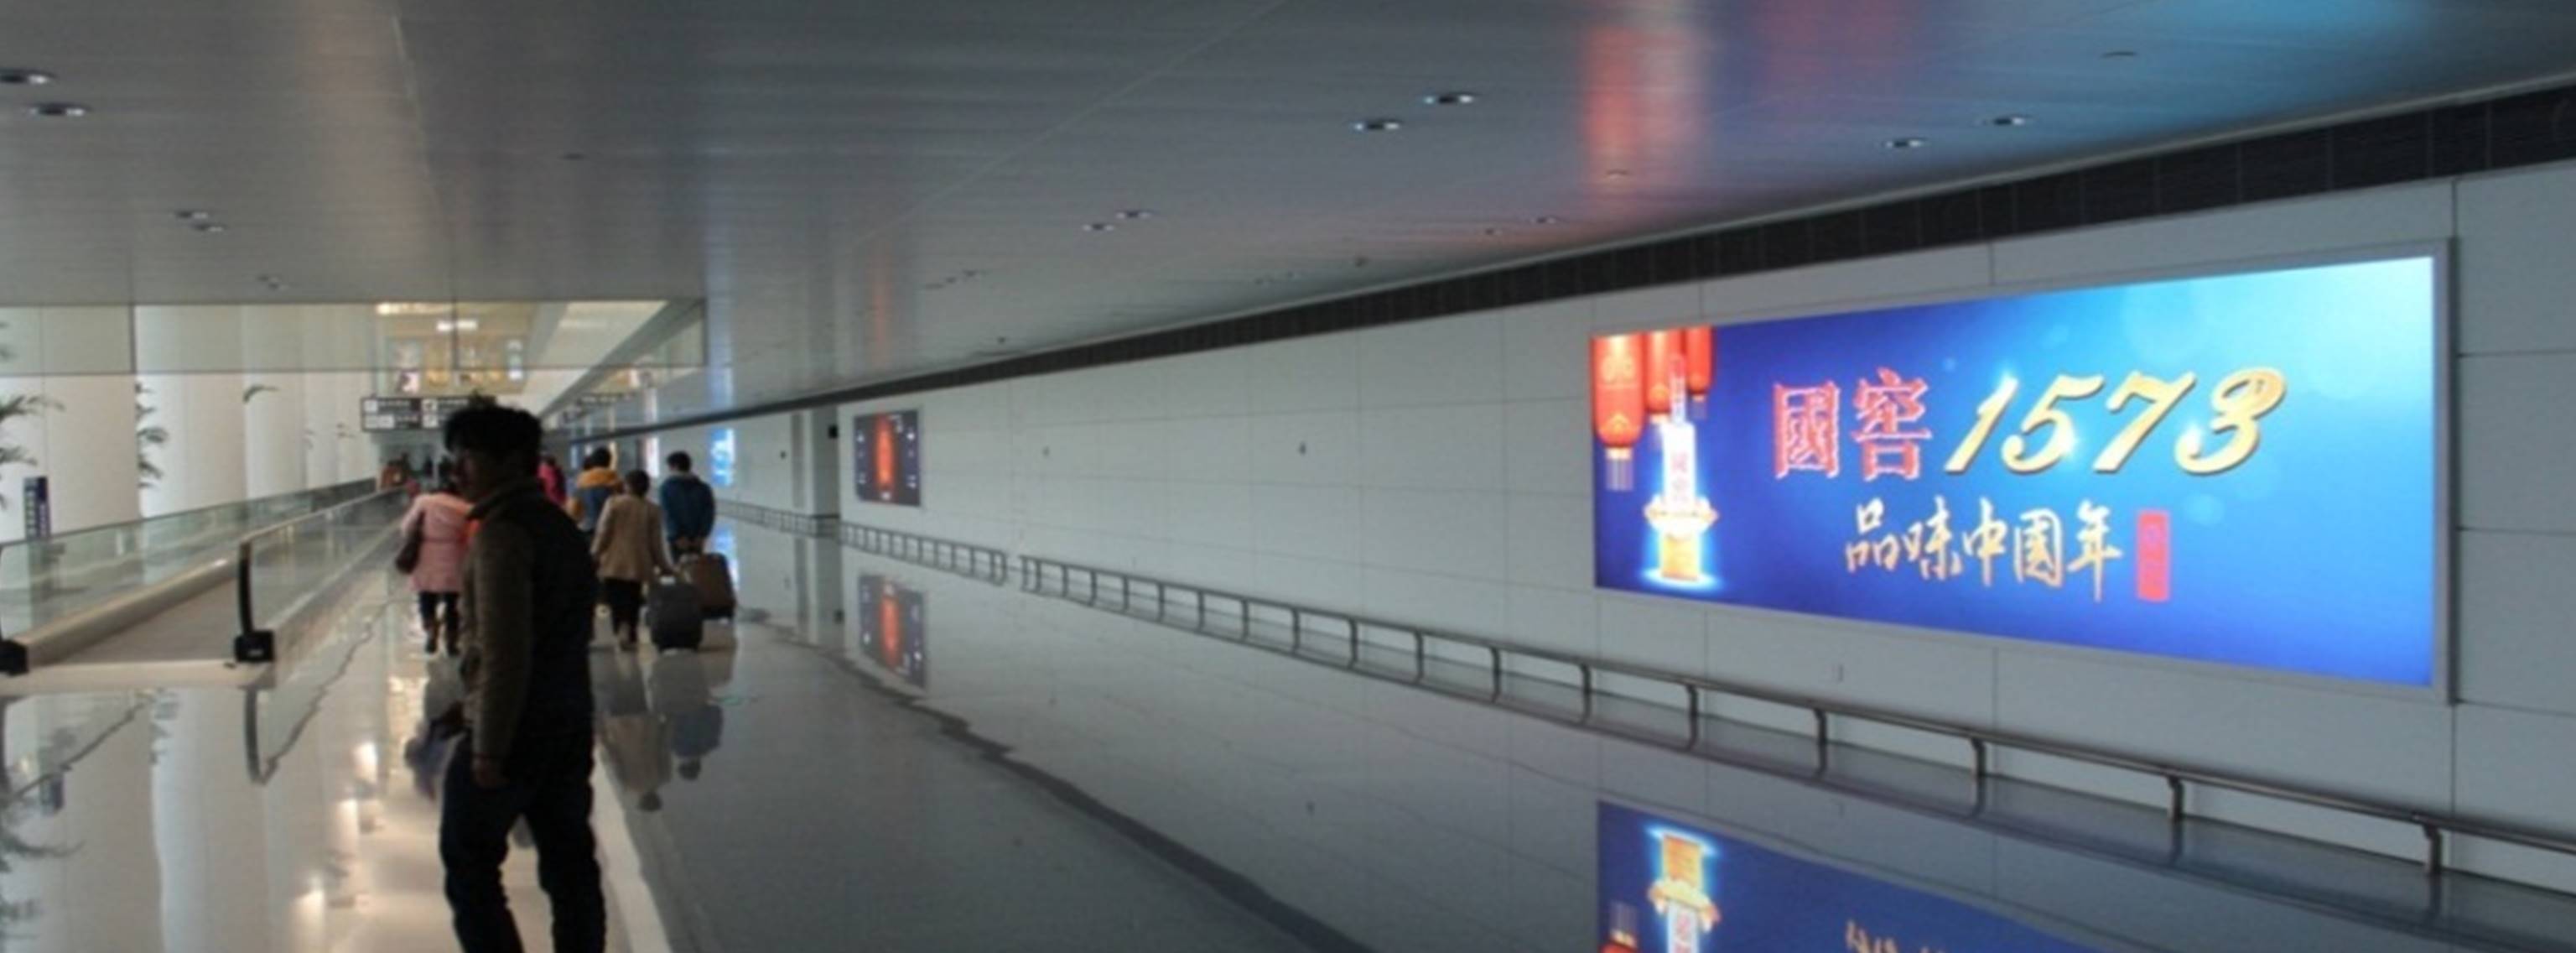 杭州萧山机场广告-T3到达通廊灯箱DA61